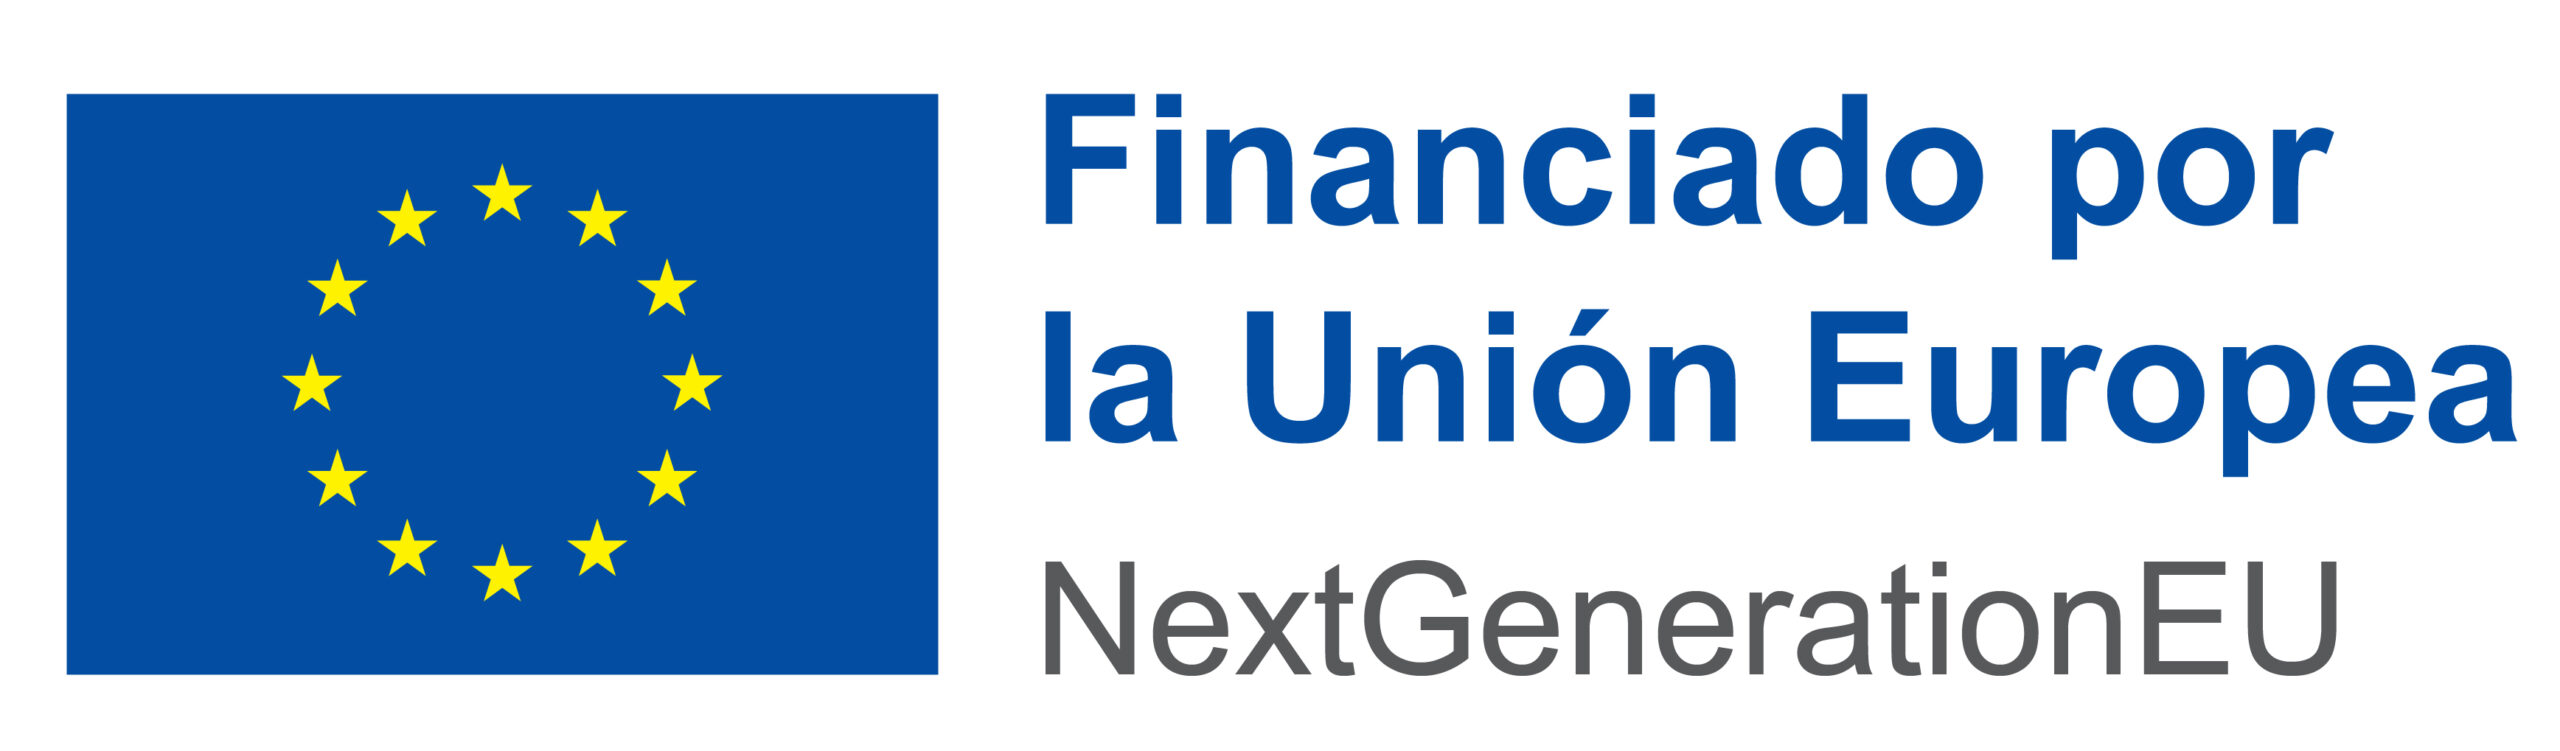 Financiado por la UE - Next Generation